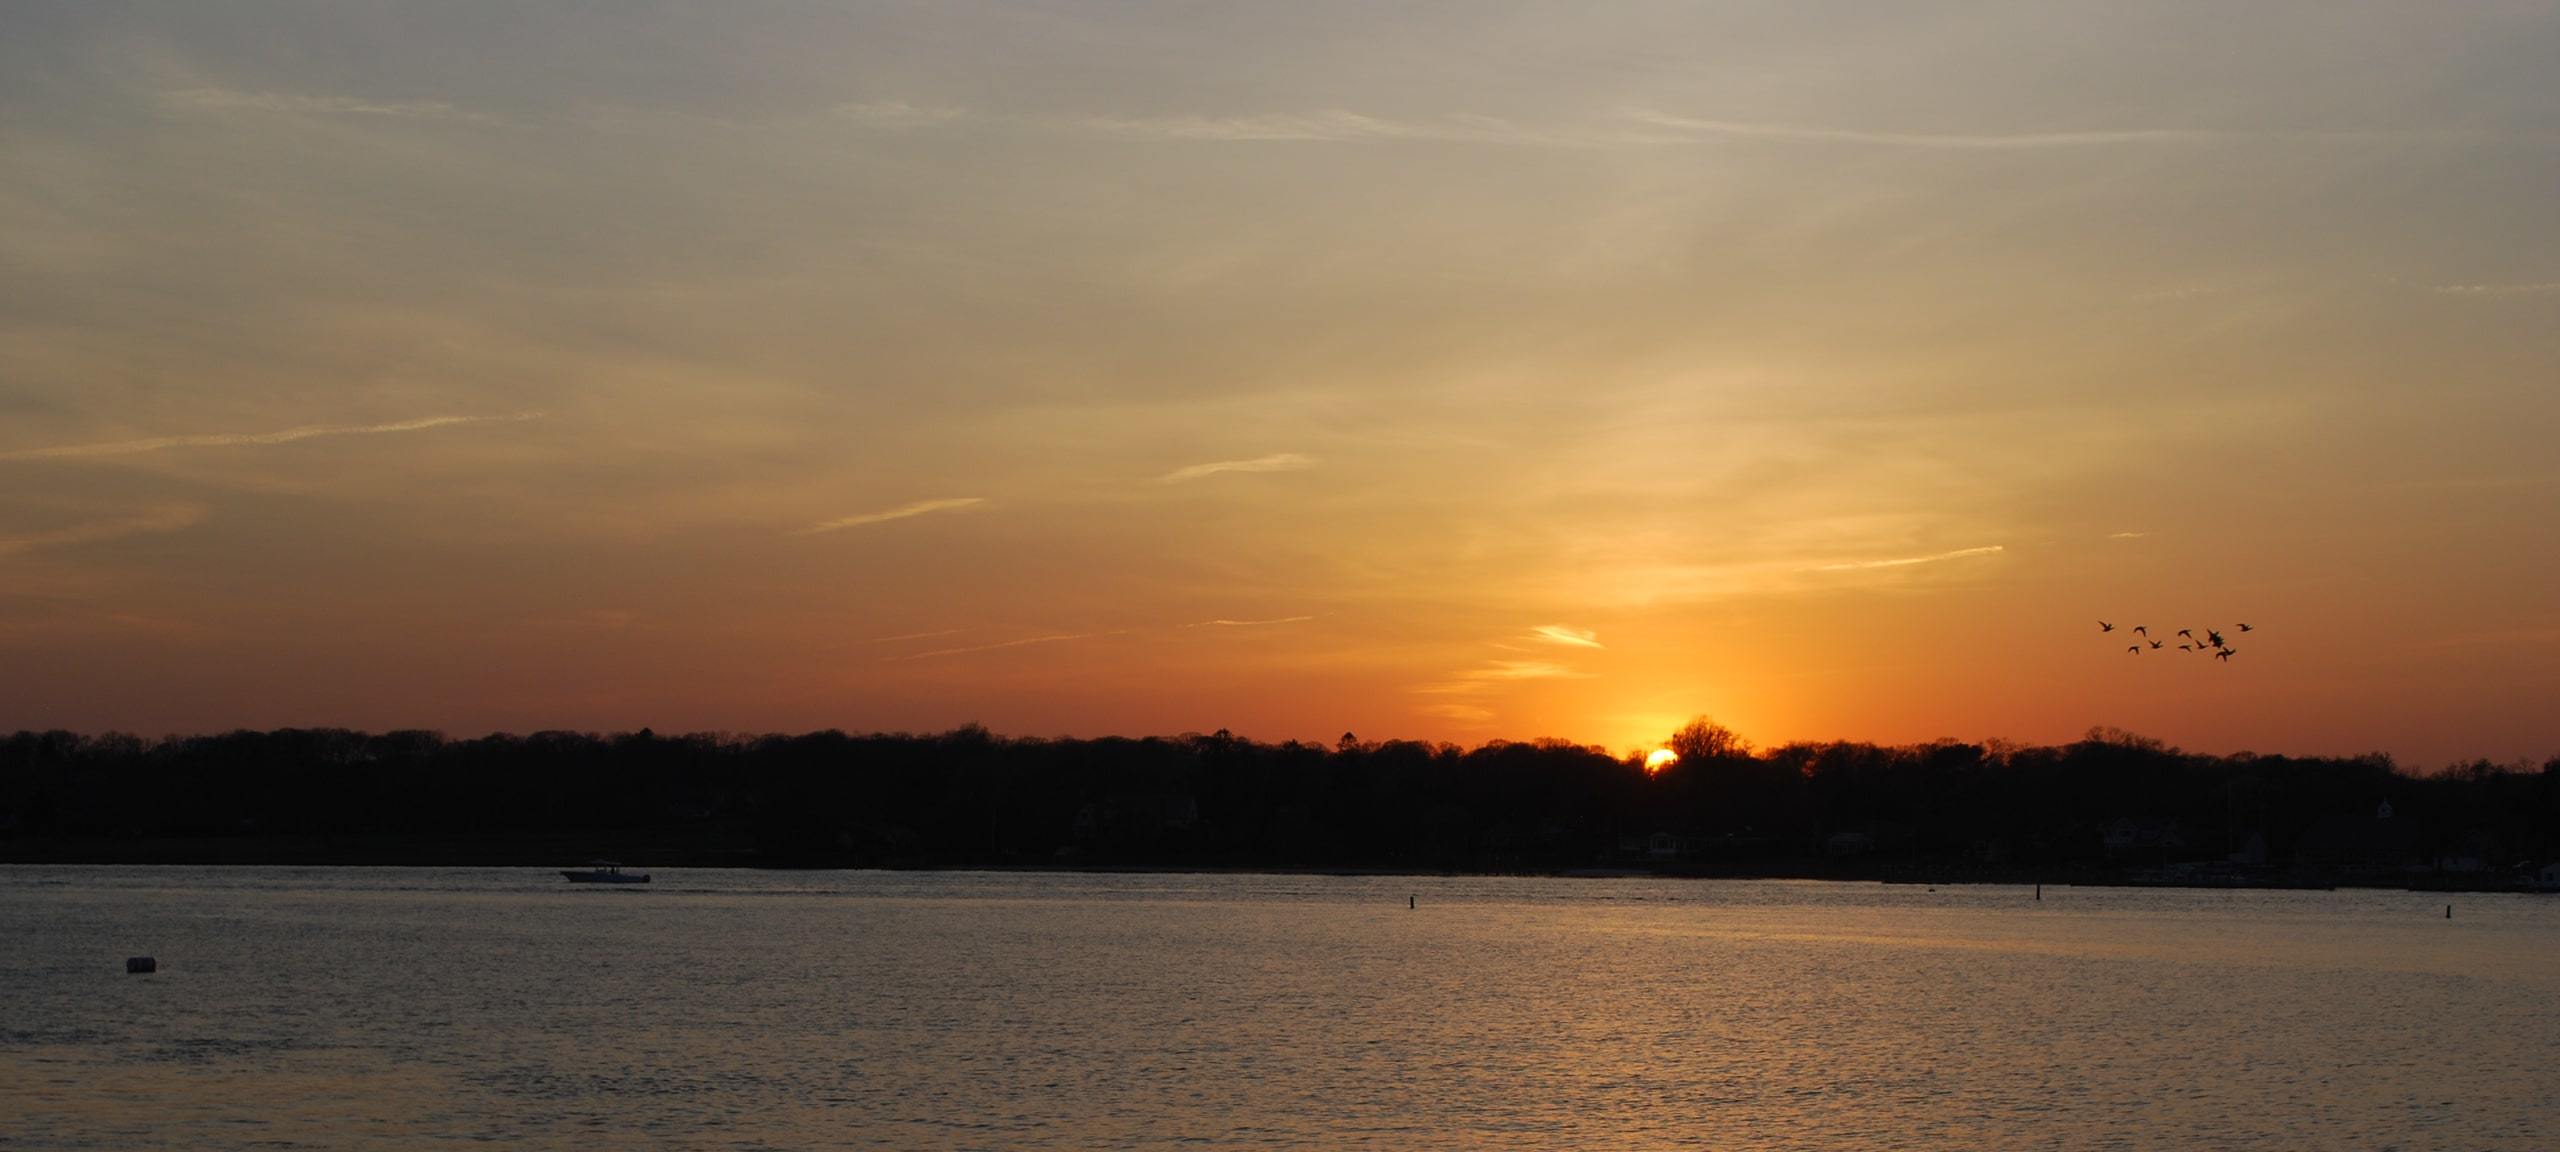 Sunset over Manasquan River near Allenwood, NJ